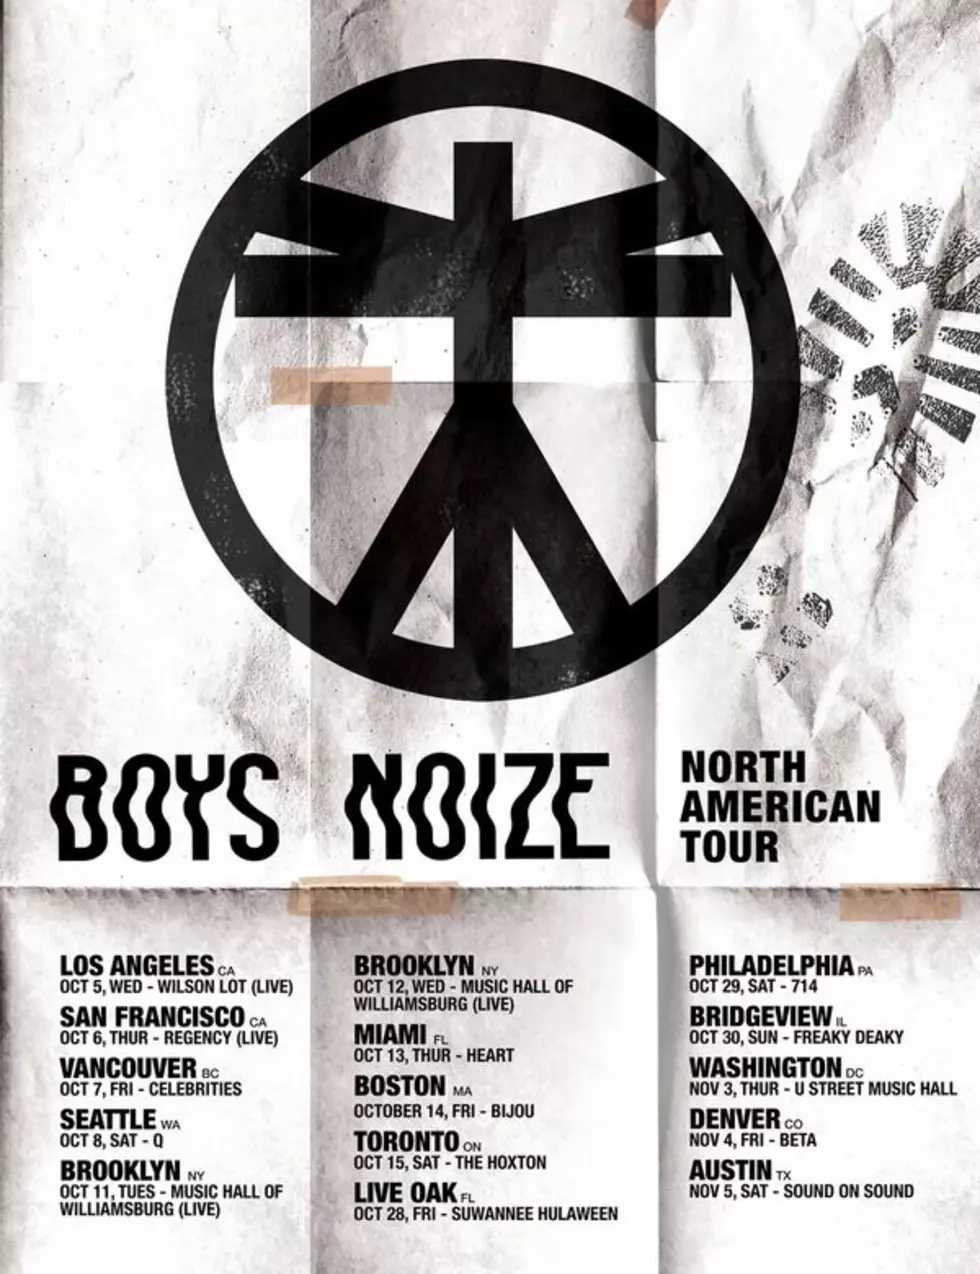 TECHNO PUNK BOYS NOIZE ANNOUNCES NORTH AMERICAN TOUR